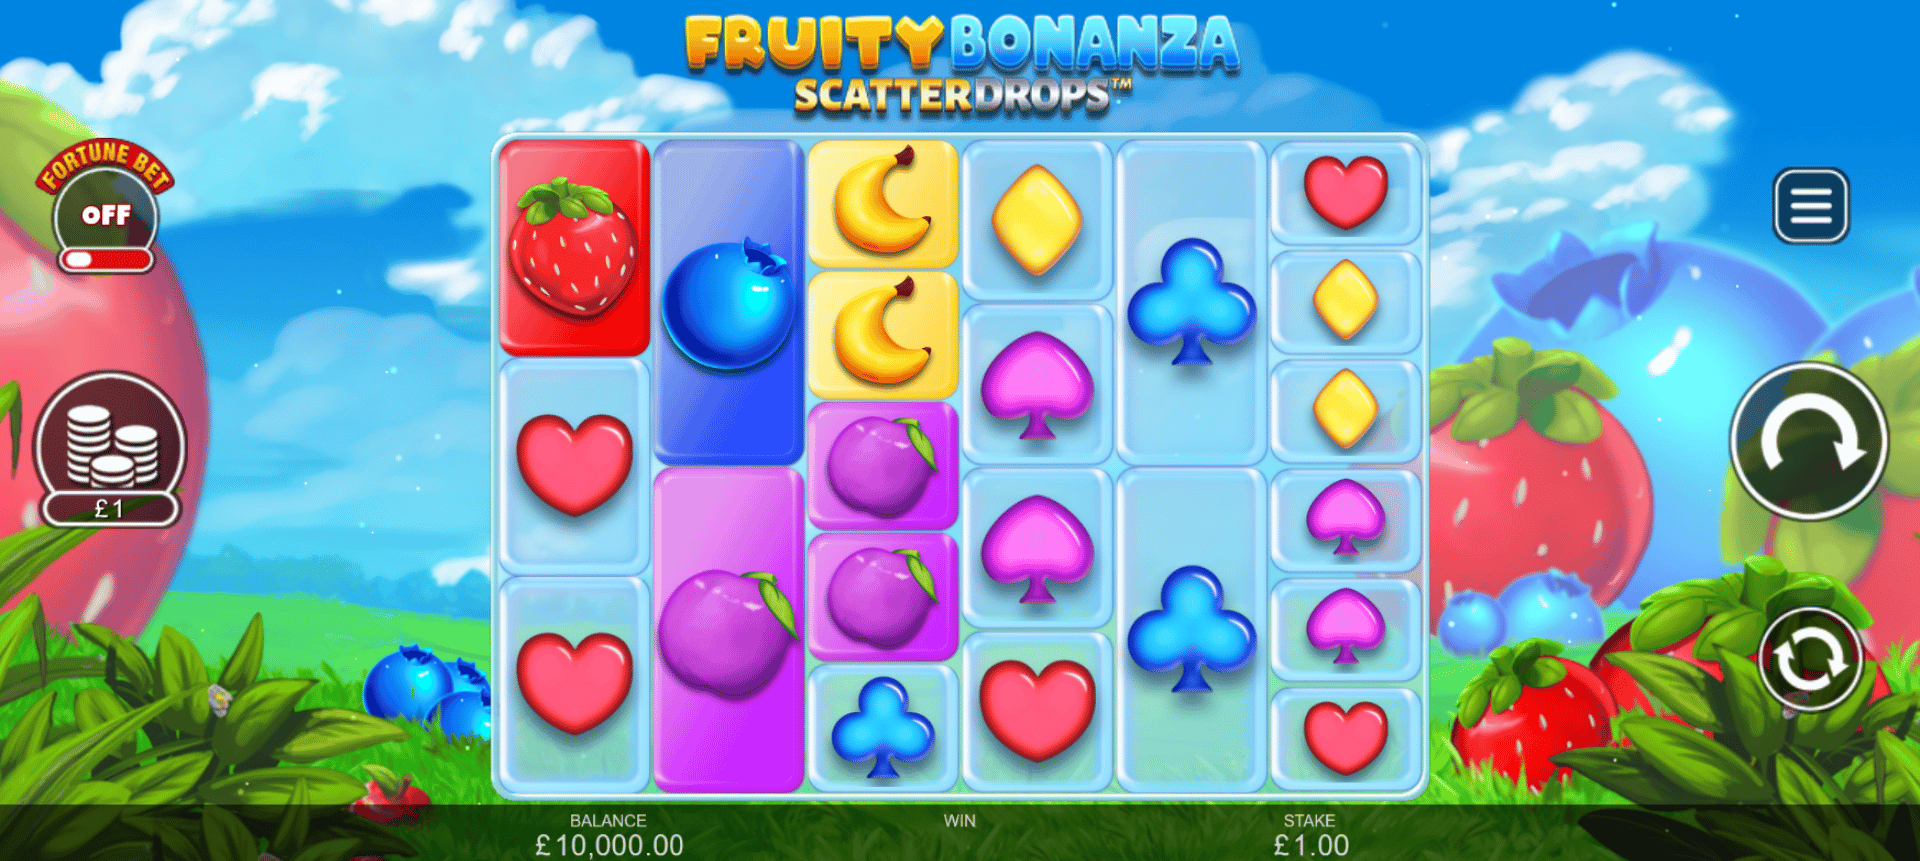 schermata di gioco slot online fruity bonanza scatter drops